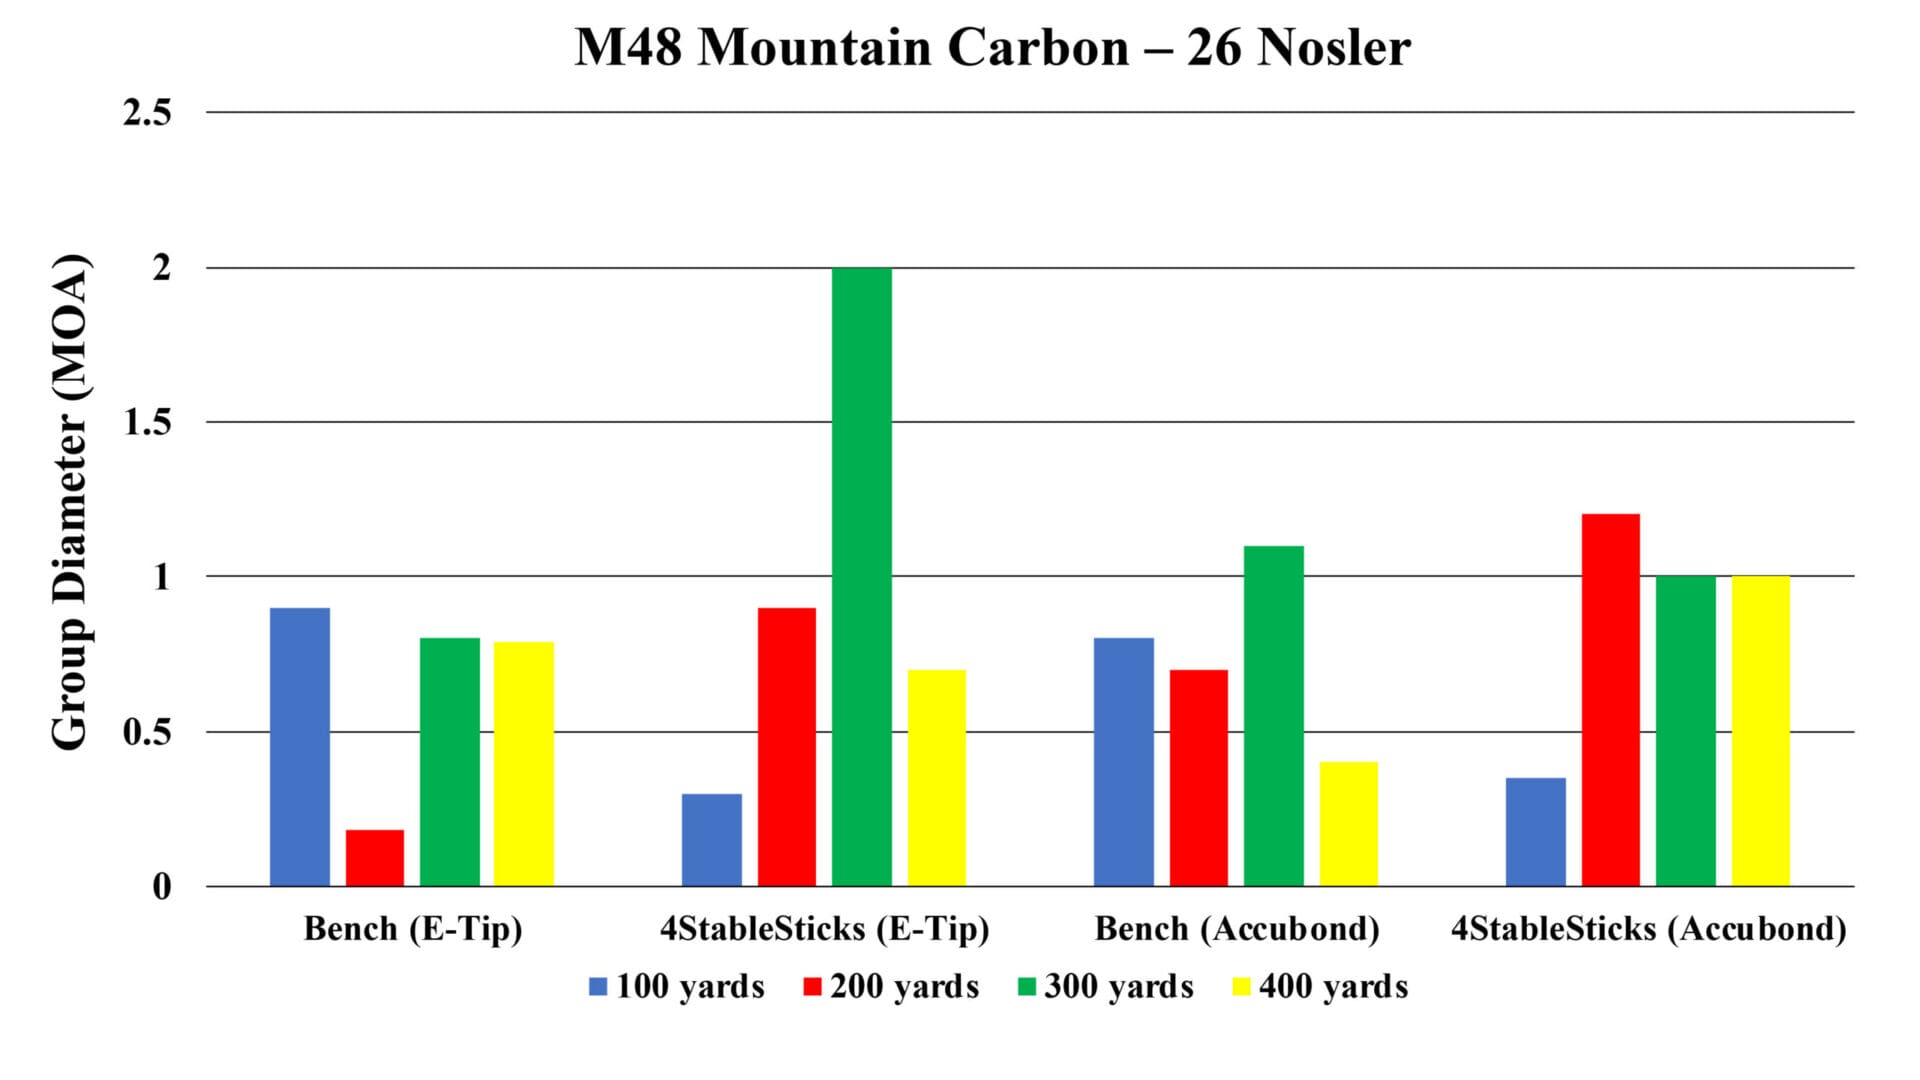 Nosler Model 48 Mountain Carbon Rifle in 26 Nosler accuracy test